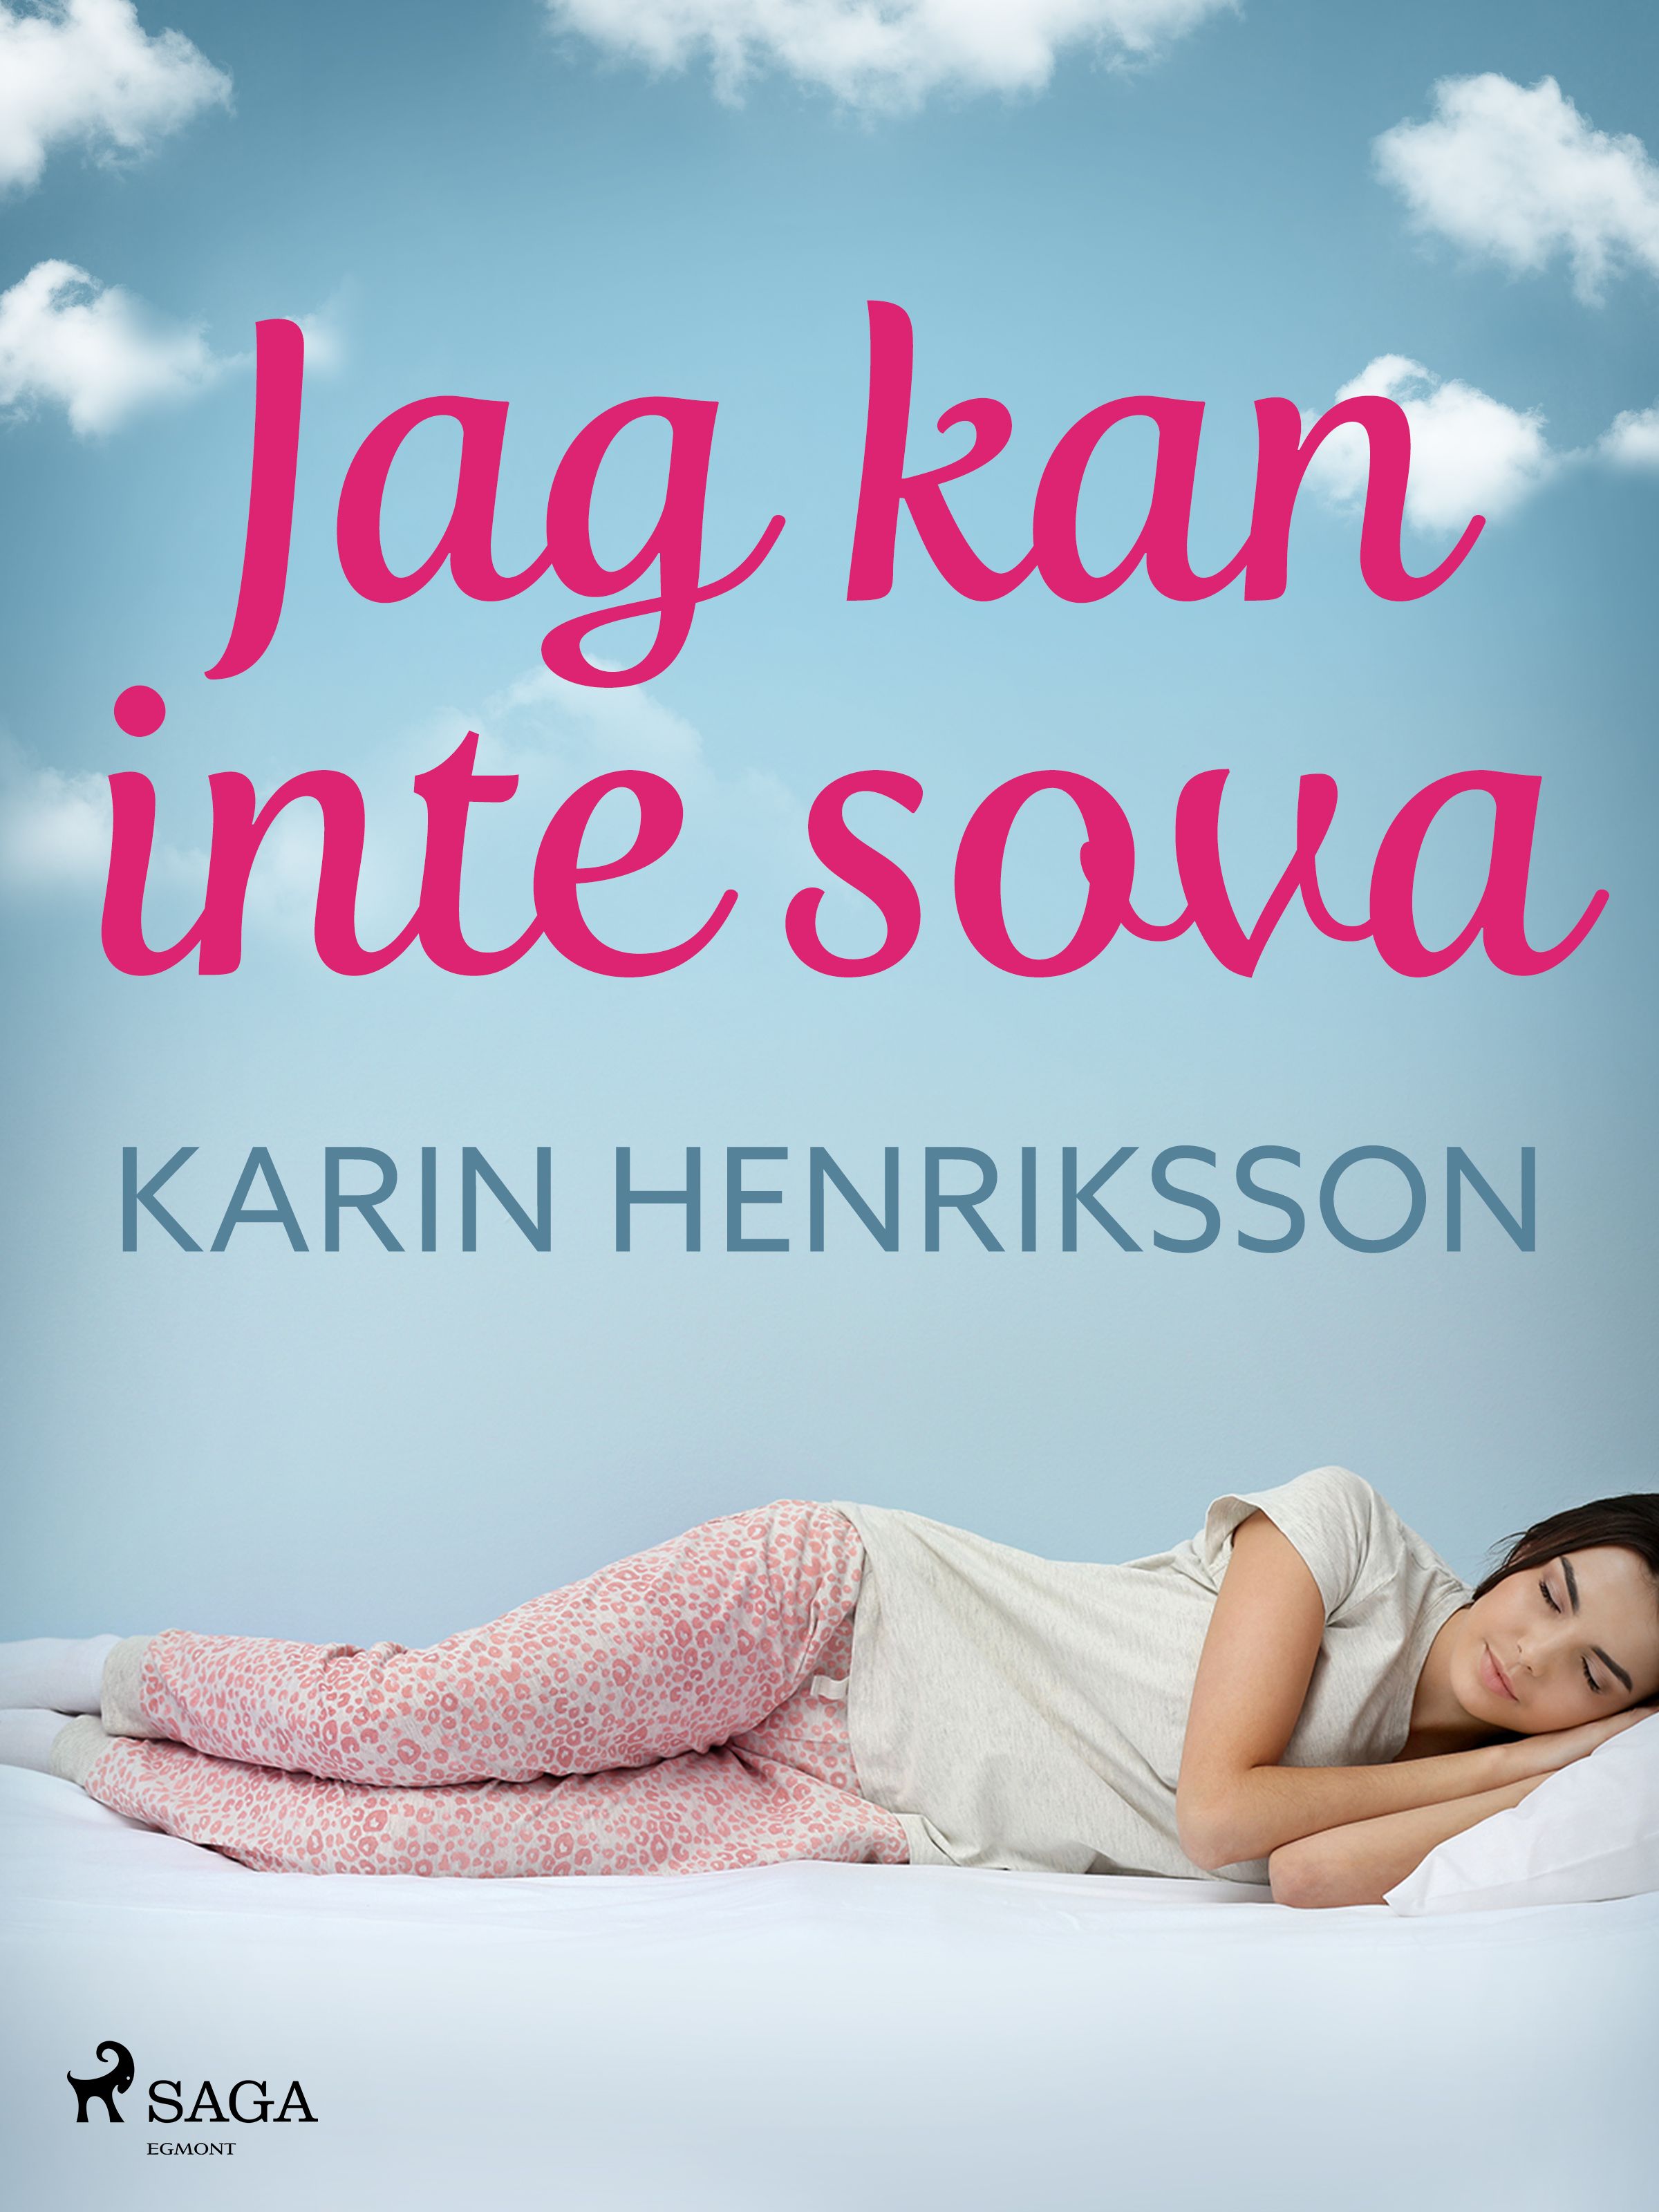 Jag kan inte sova, eBook by Karin Henriksson